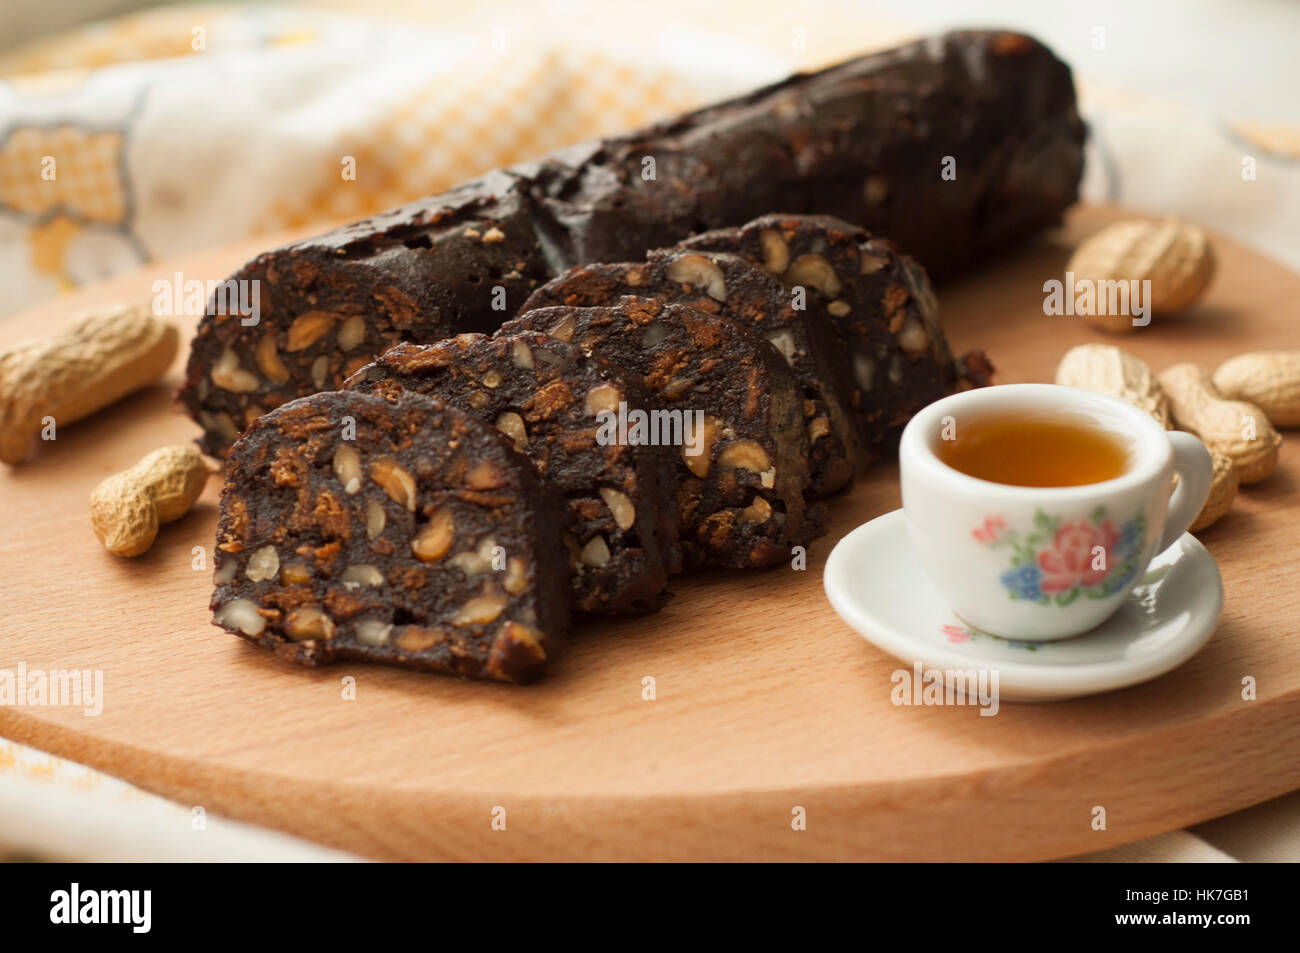 Salame di cioccolato con biscotti e nocciole sul tagliere Foto Stock